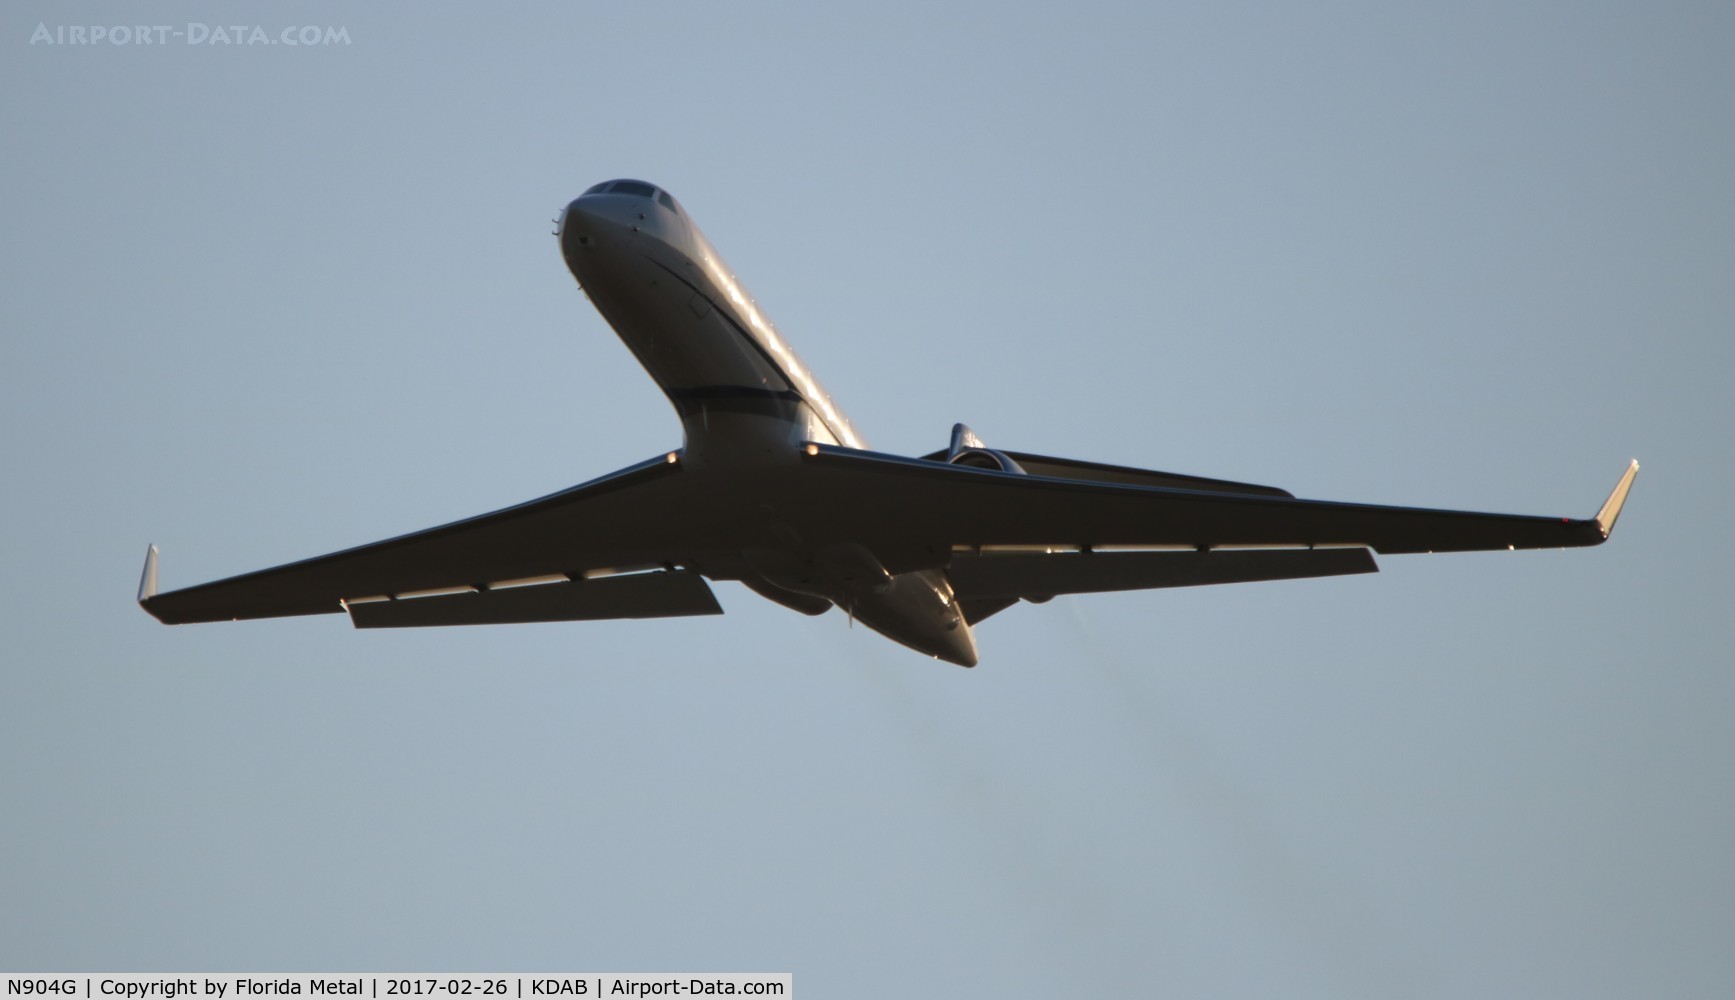 N904G, 2006 Gulfstream Aerospace GV-SP (G550) C/N 5101, DAB spotting 2017